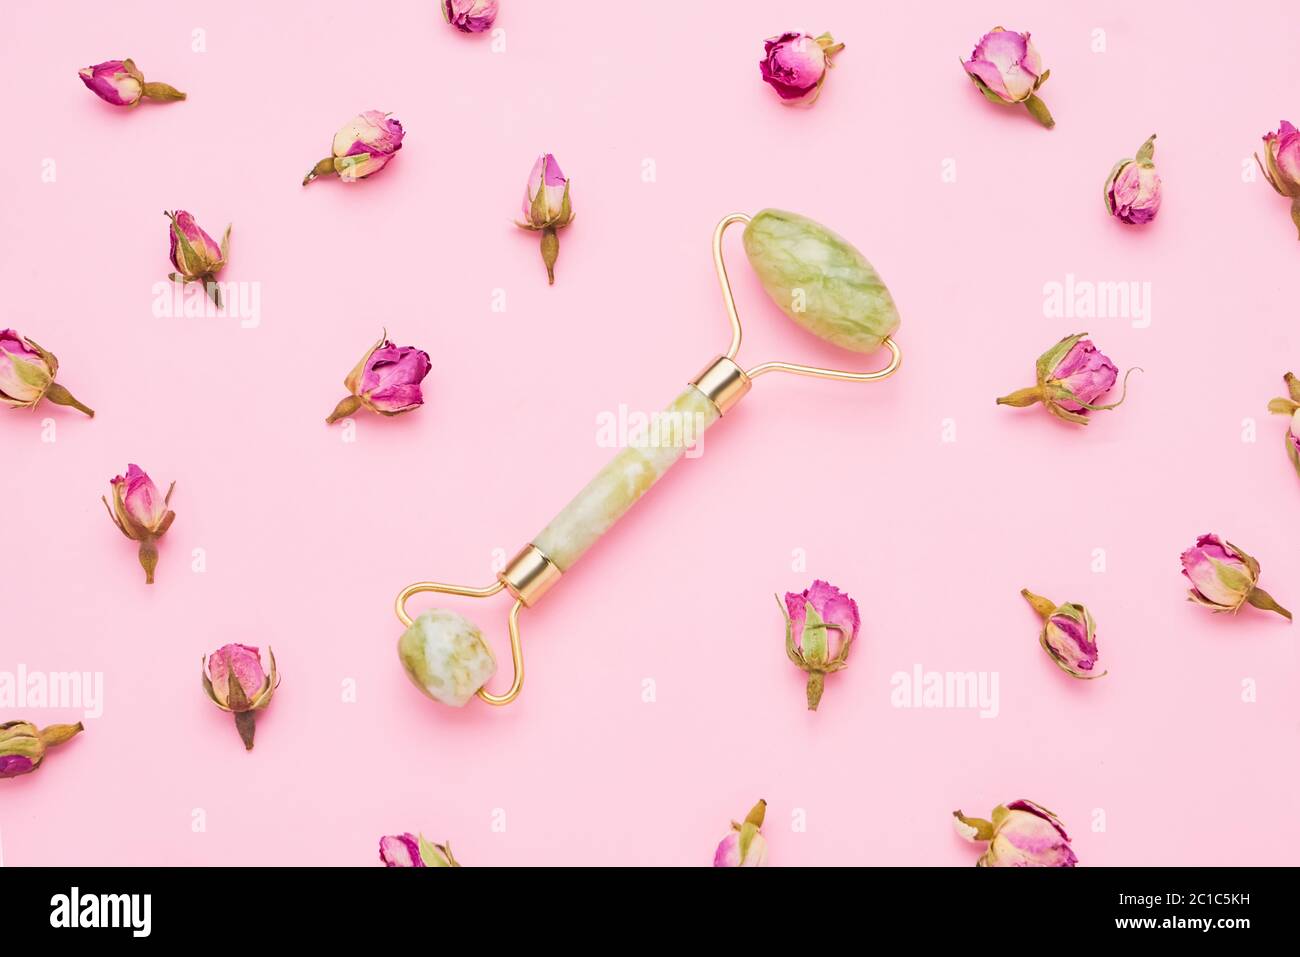 Rouleau de massage pour visage avec deux pierres de jade sur fond rose avec des fleurs de roses séchées autour. Concept de soins de santé. Vue de dessus Banque D'Images